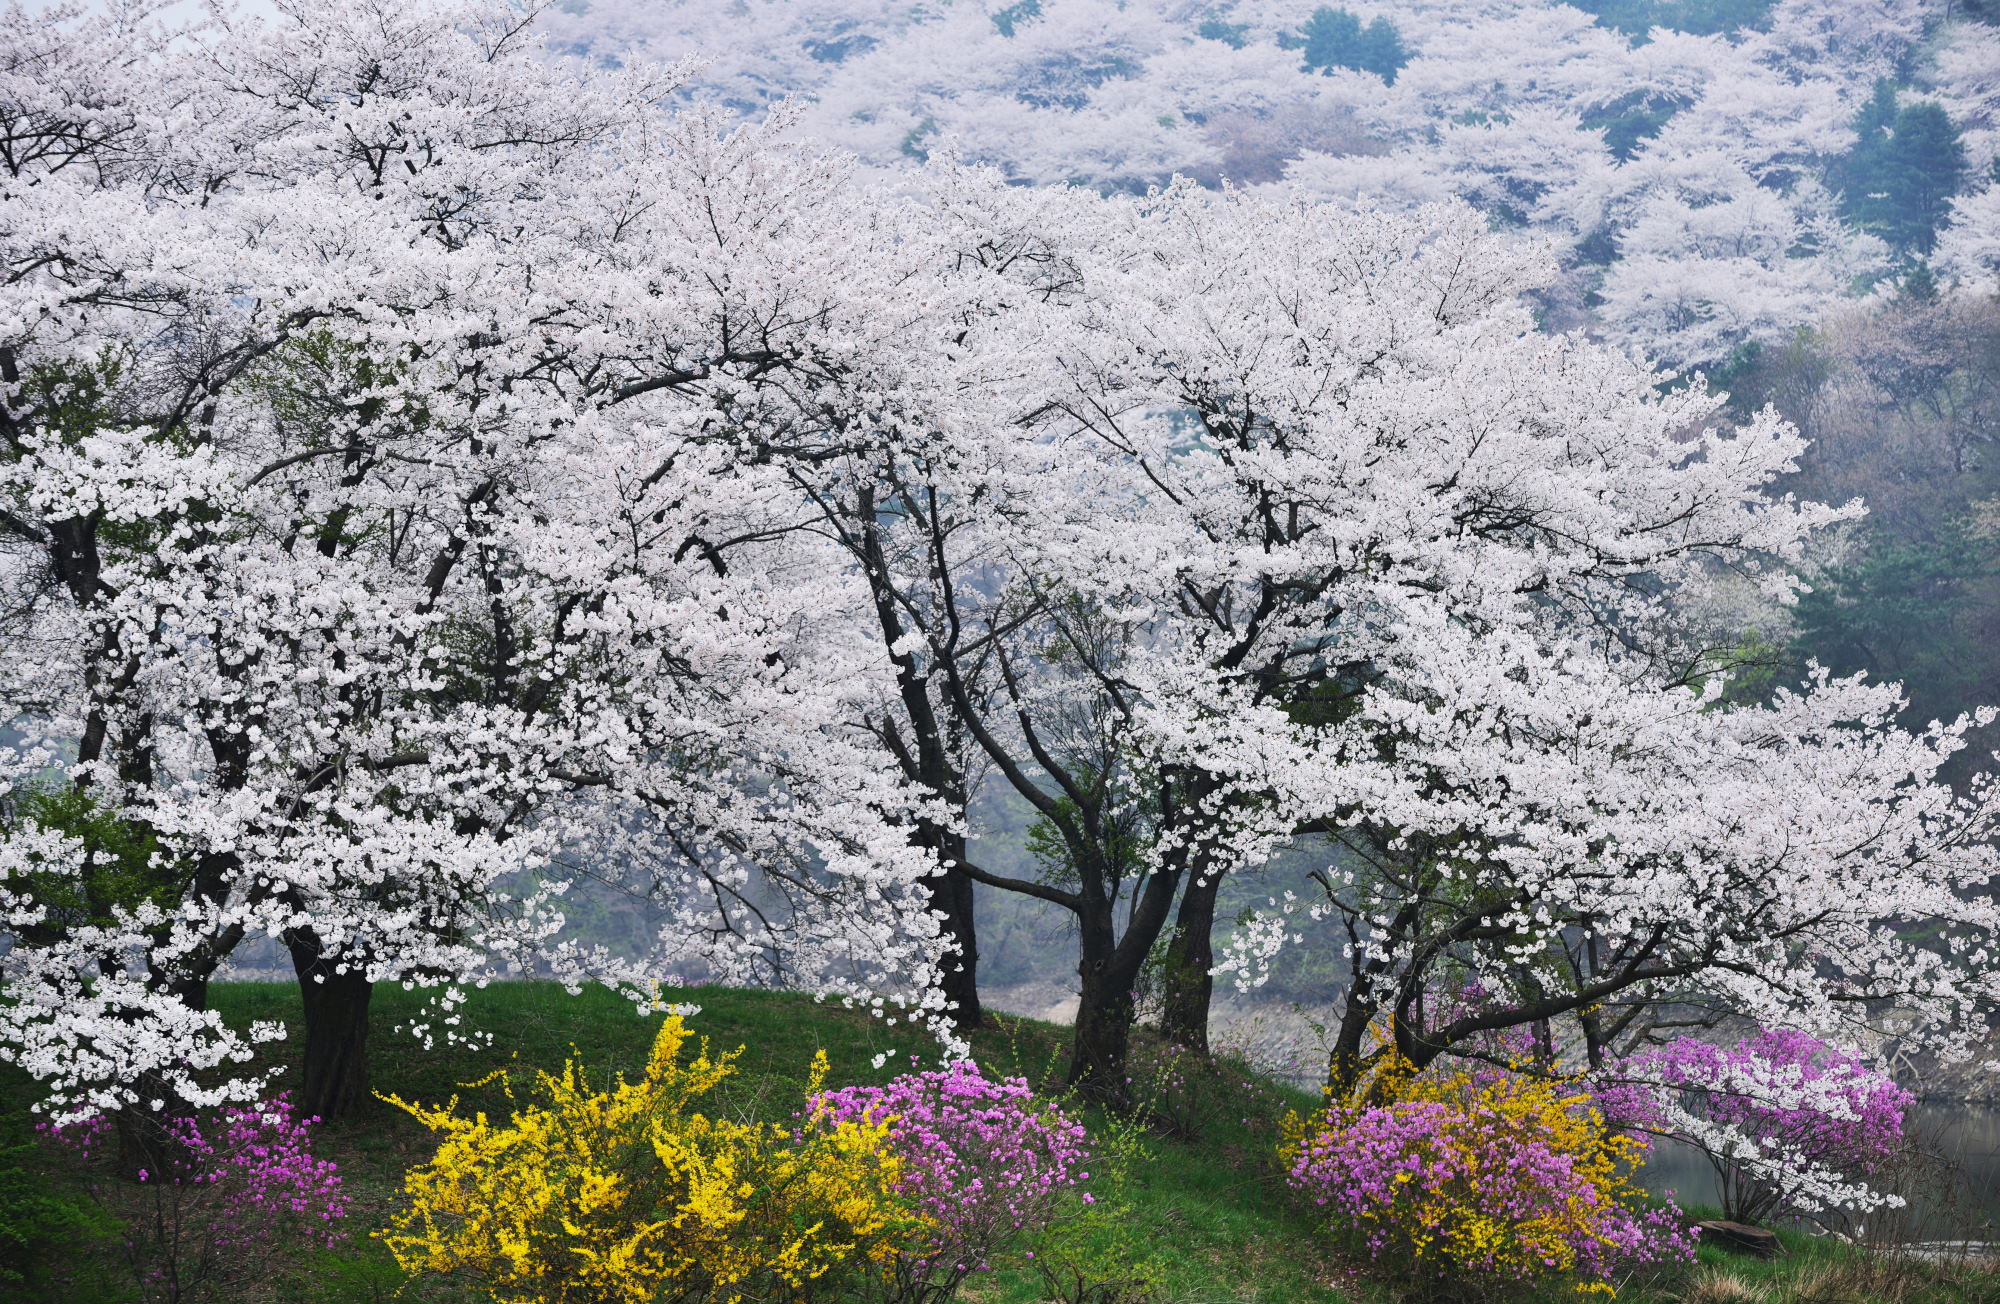 에버랜드, 벚꽃 축제 관련사진1